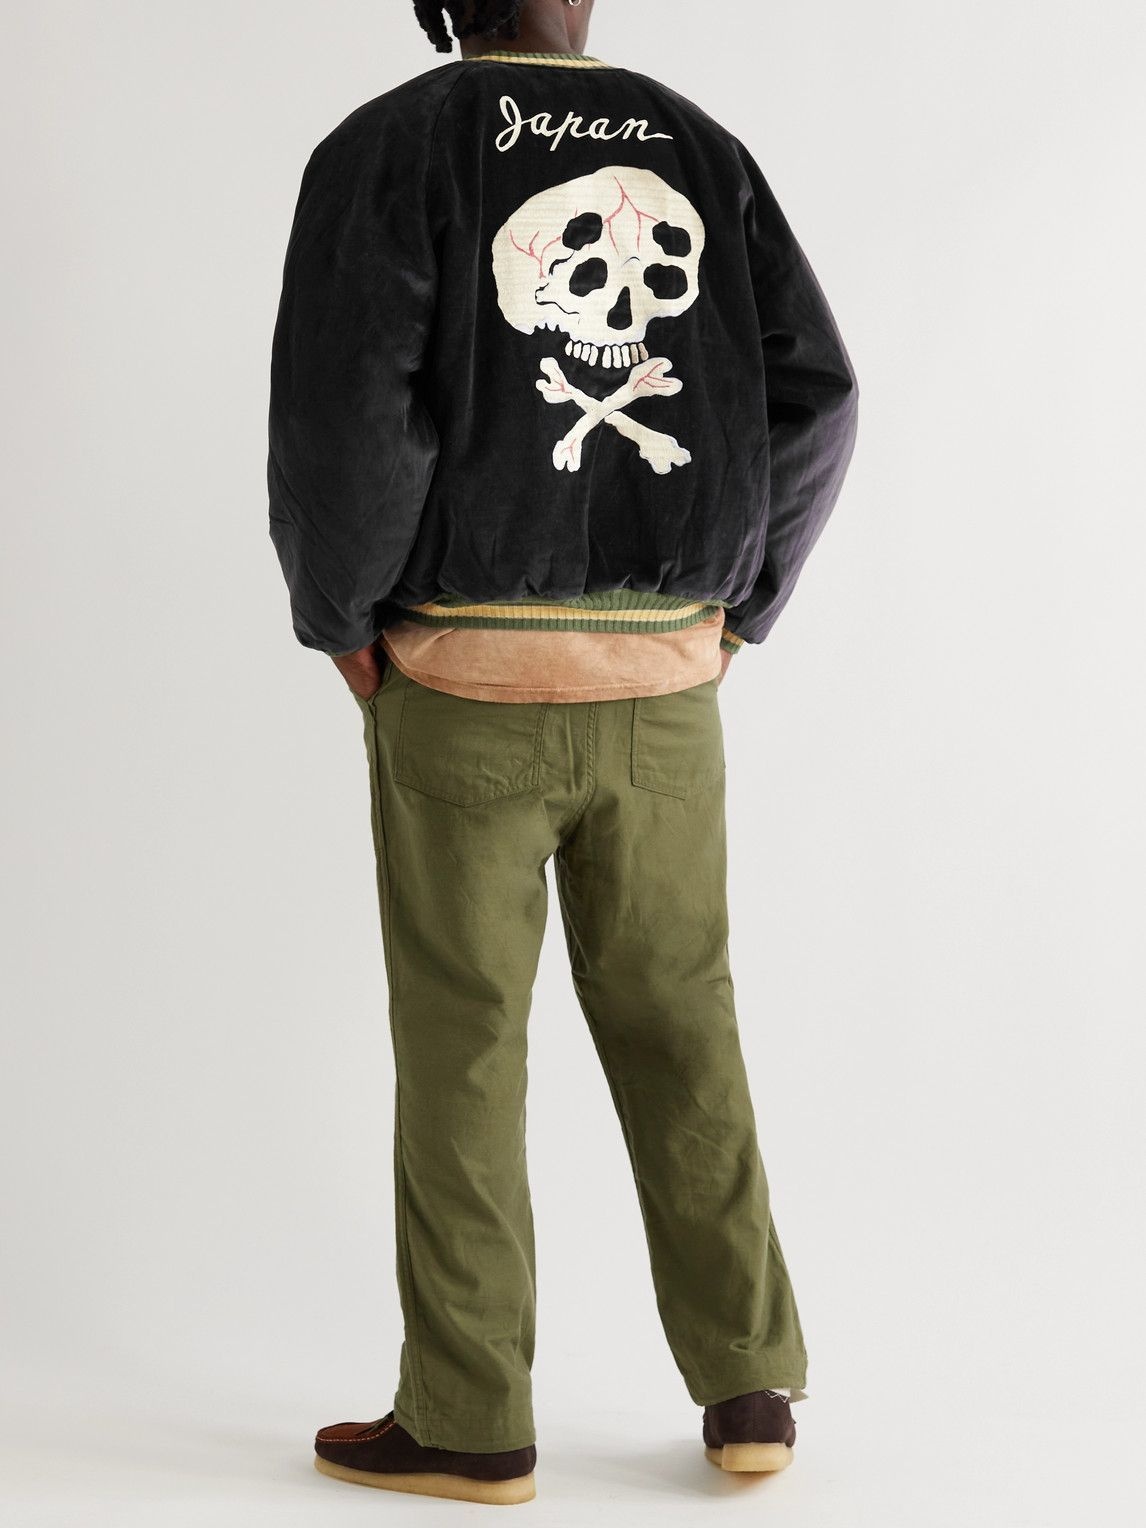 KAPITAL - Embroidered Cotton-Velvet Bomber Jacket - Black KAPITAL